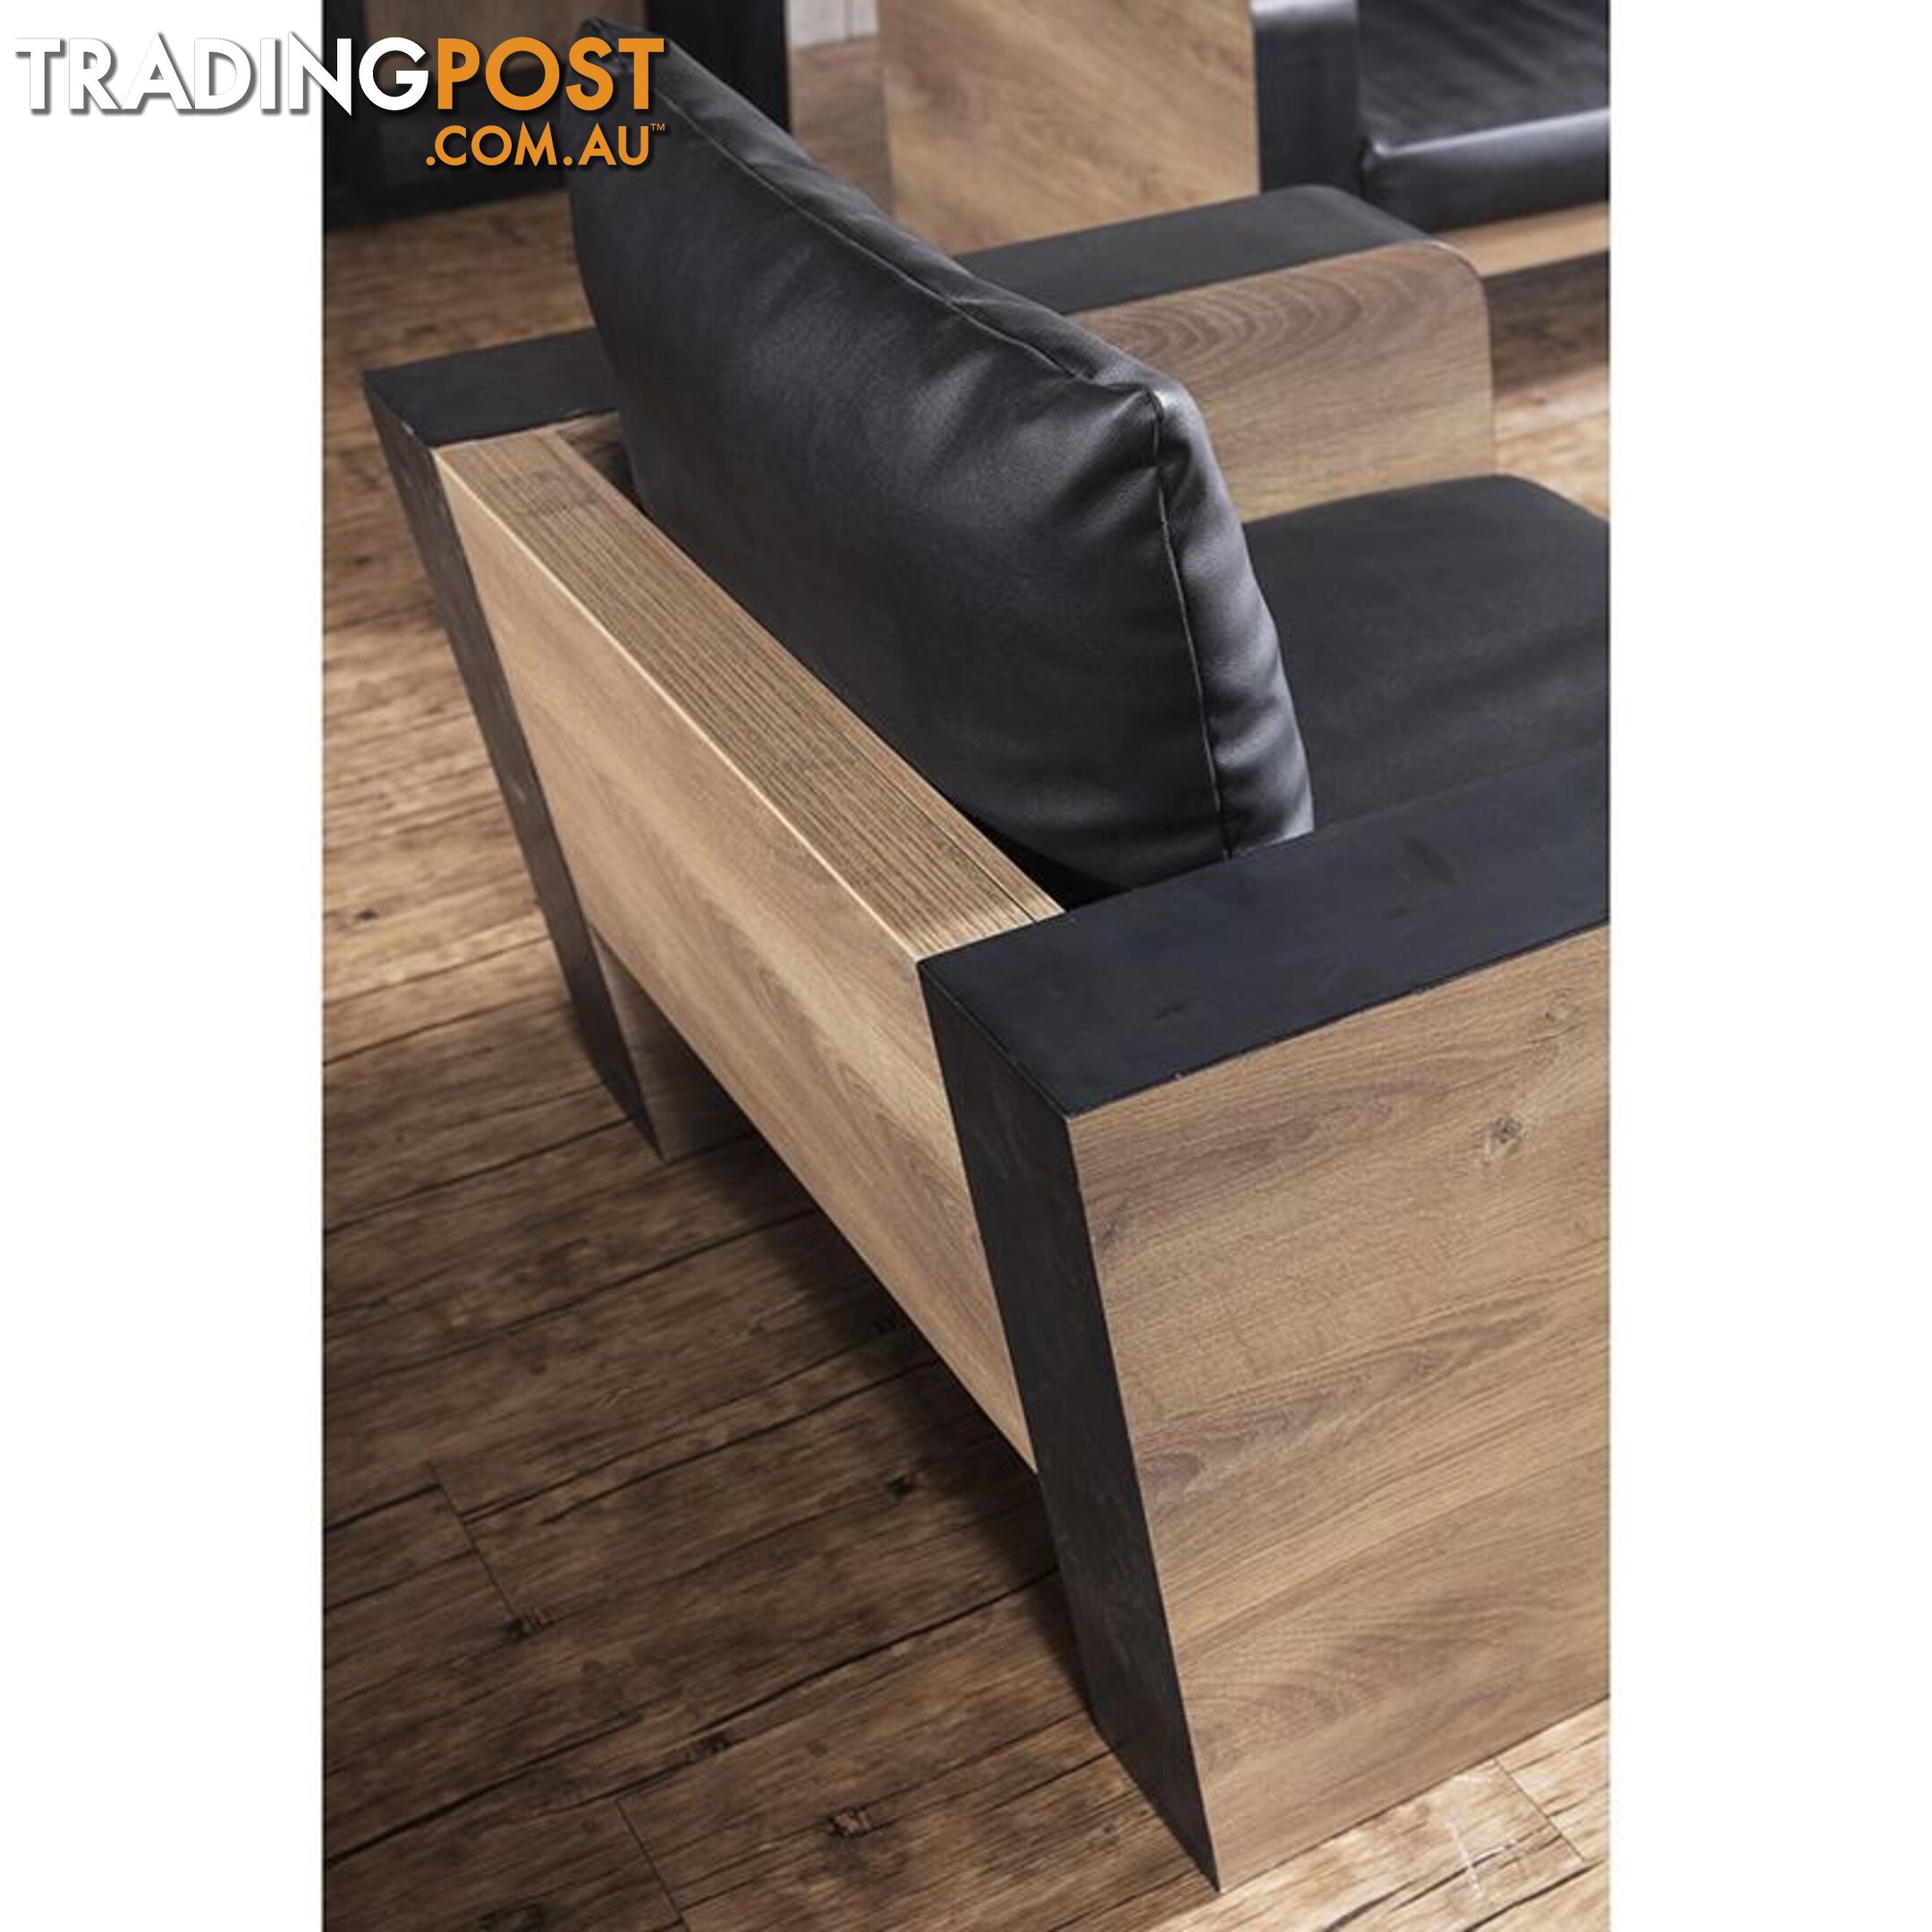 FRANCO Three Seater Sofa - Warm Oak & Black - WF-N2821-3 - 9334719004006